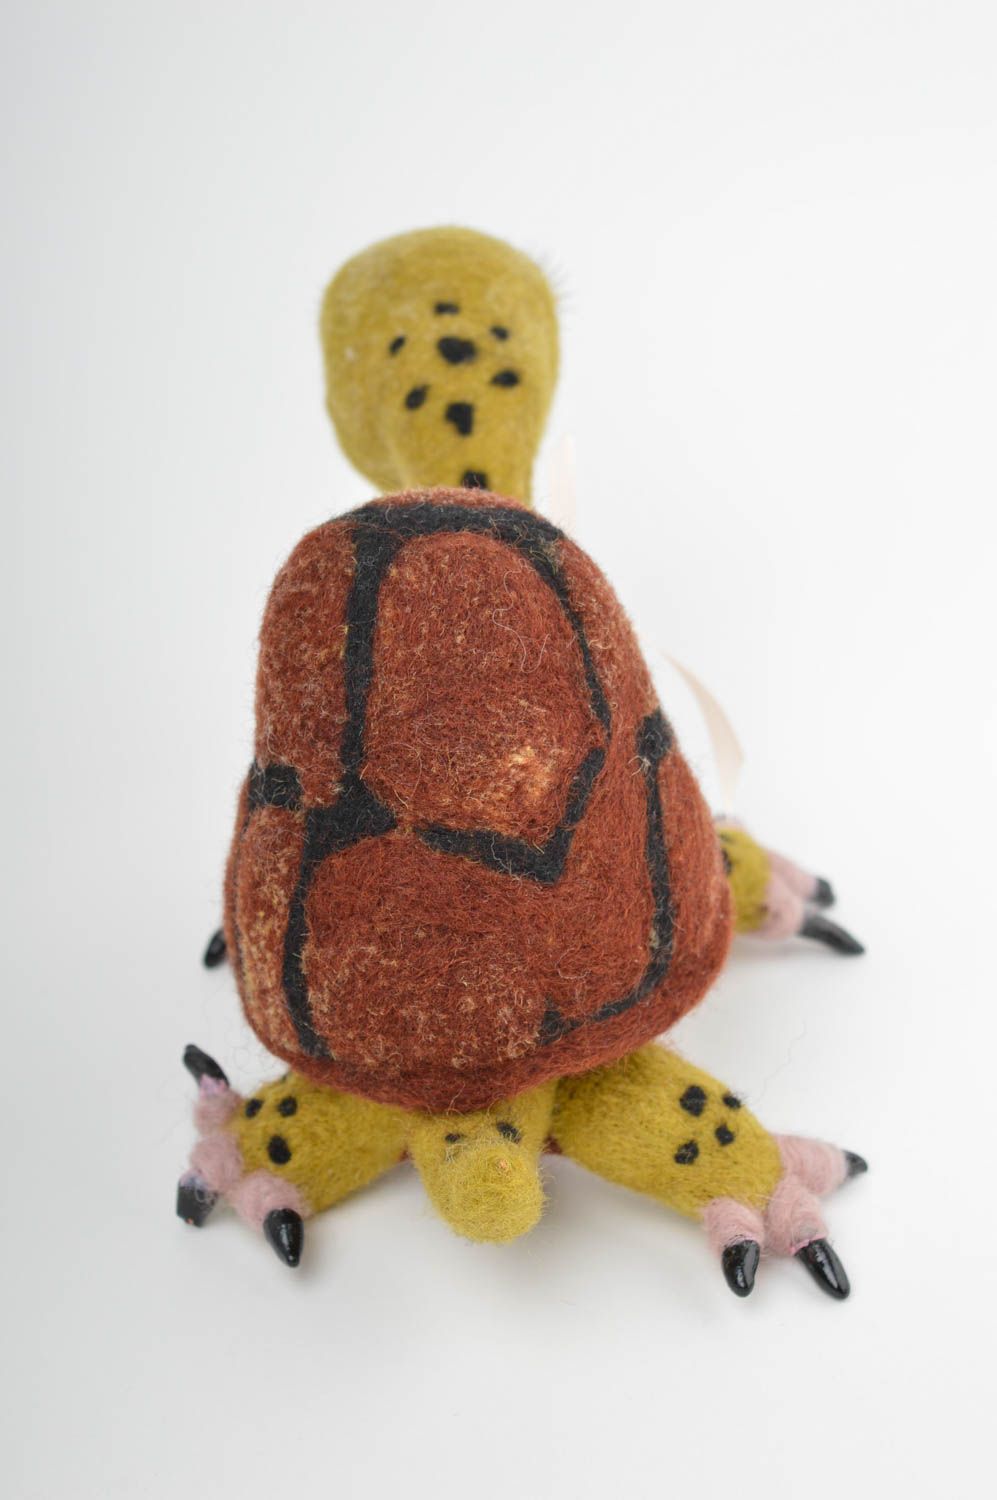 Валяная игрушка ручной работы игрушка из шерсти мягкая игрушка декор Черепаха фото 2